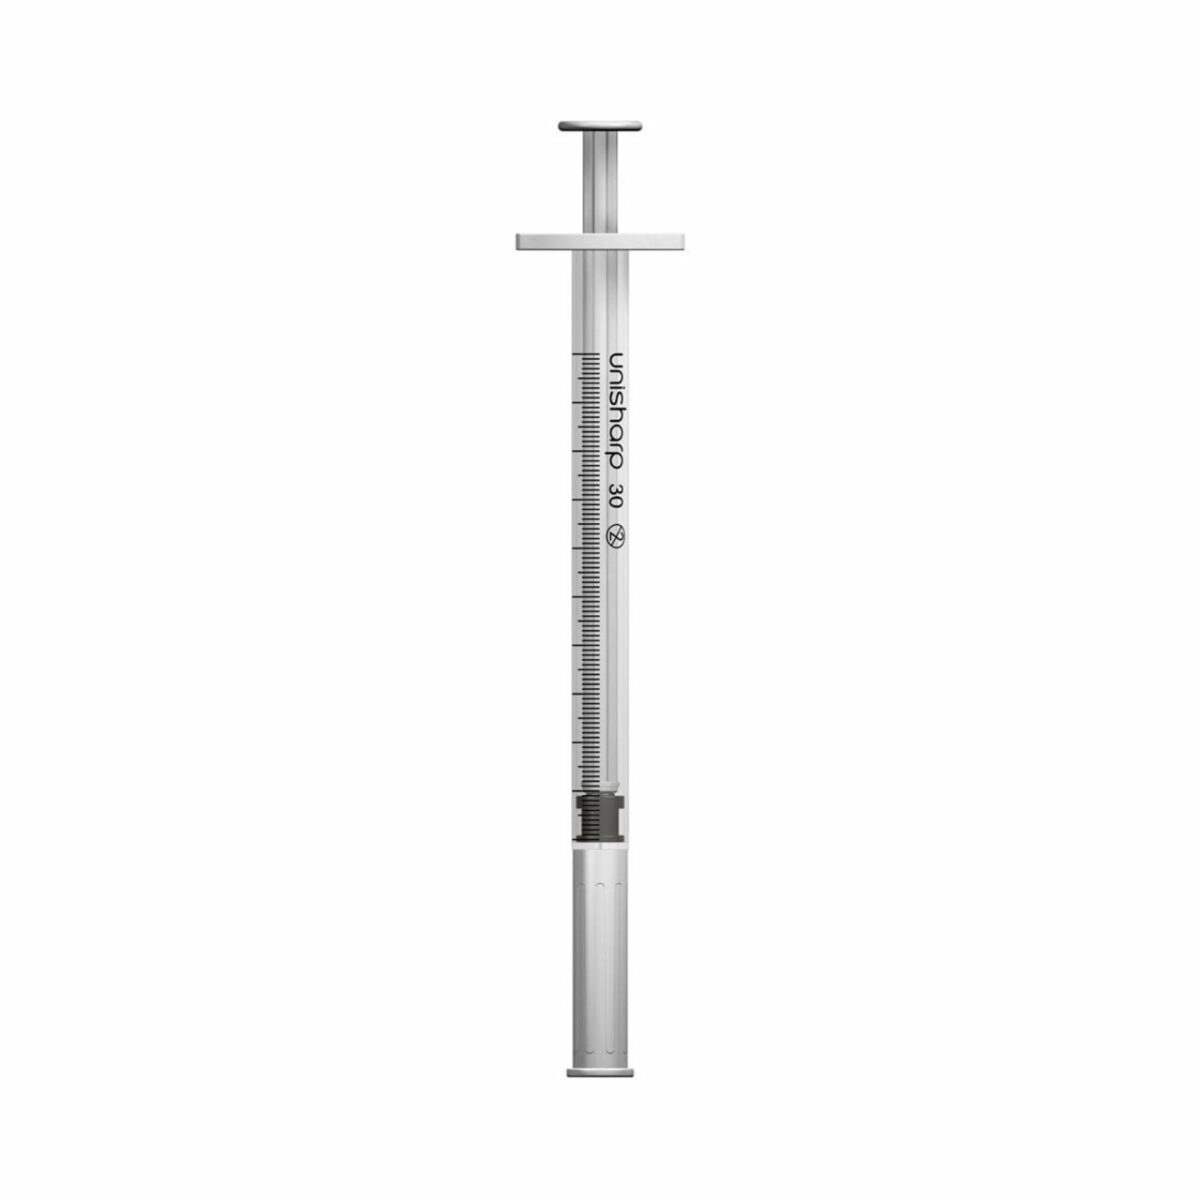 unisharp unisharp 1ml 30g 12mm fixed needle syringe 26901 1 95135.1674791648.1280.1280 83718.1675384743.1280.1280 51486